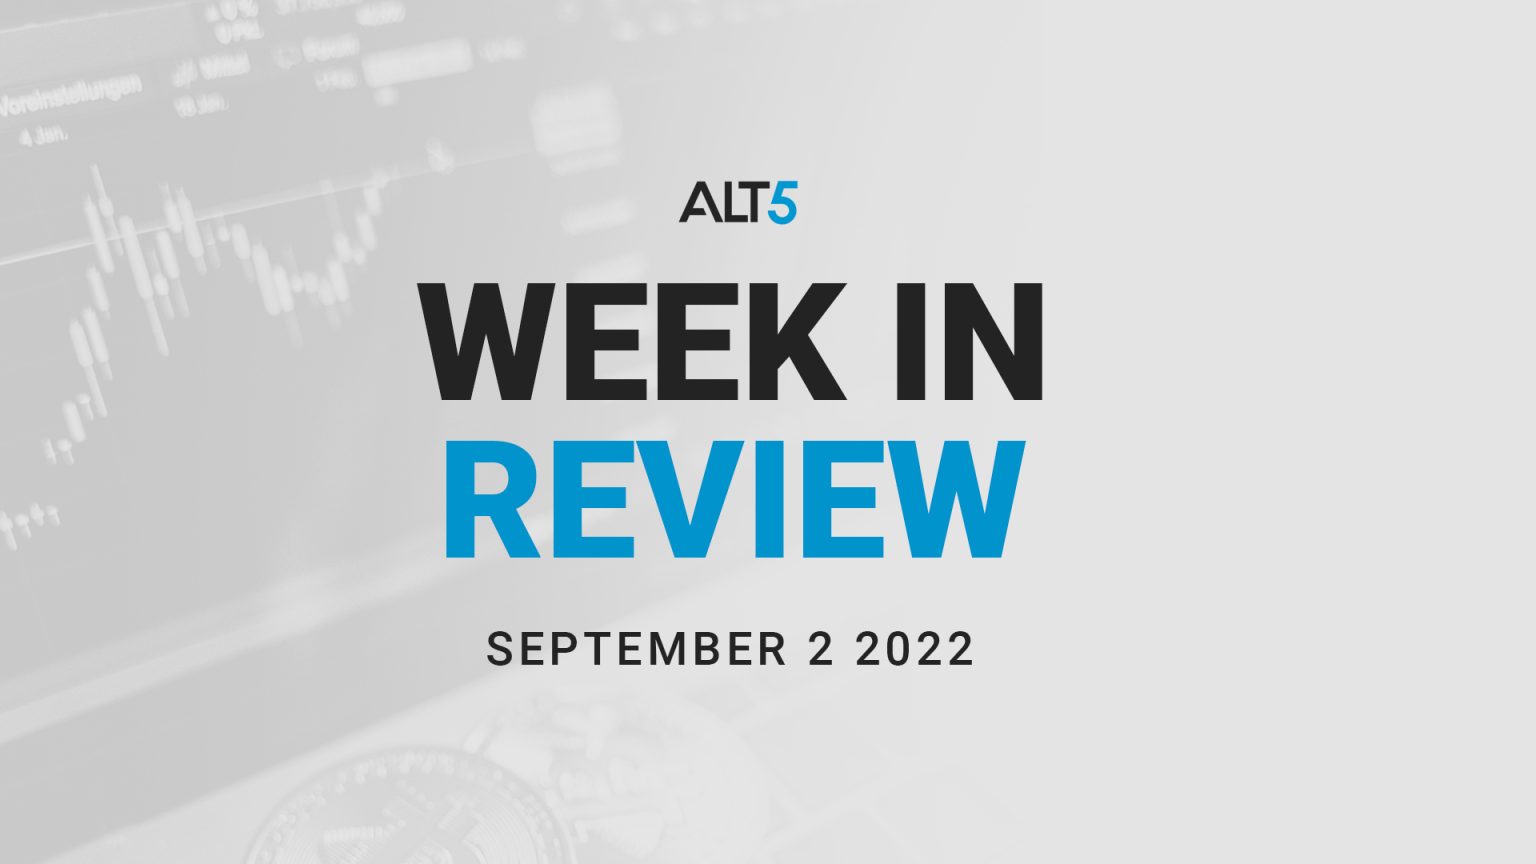 Week in review: September 2 2022